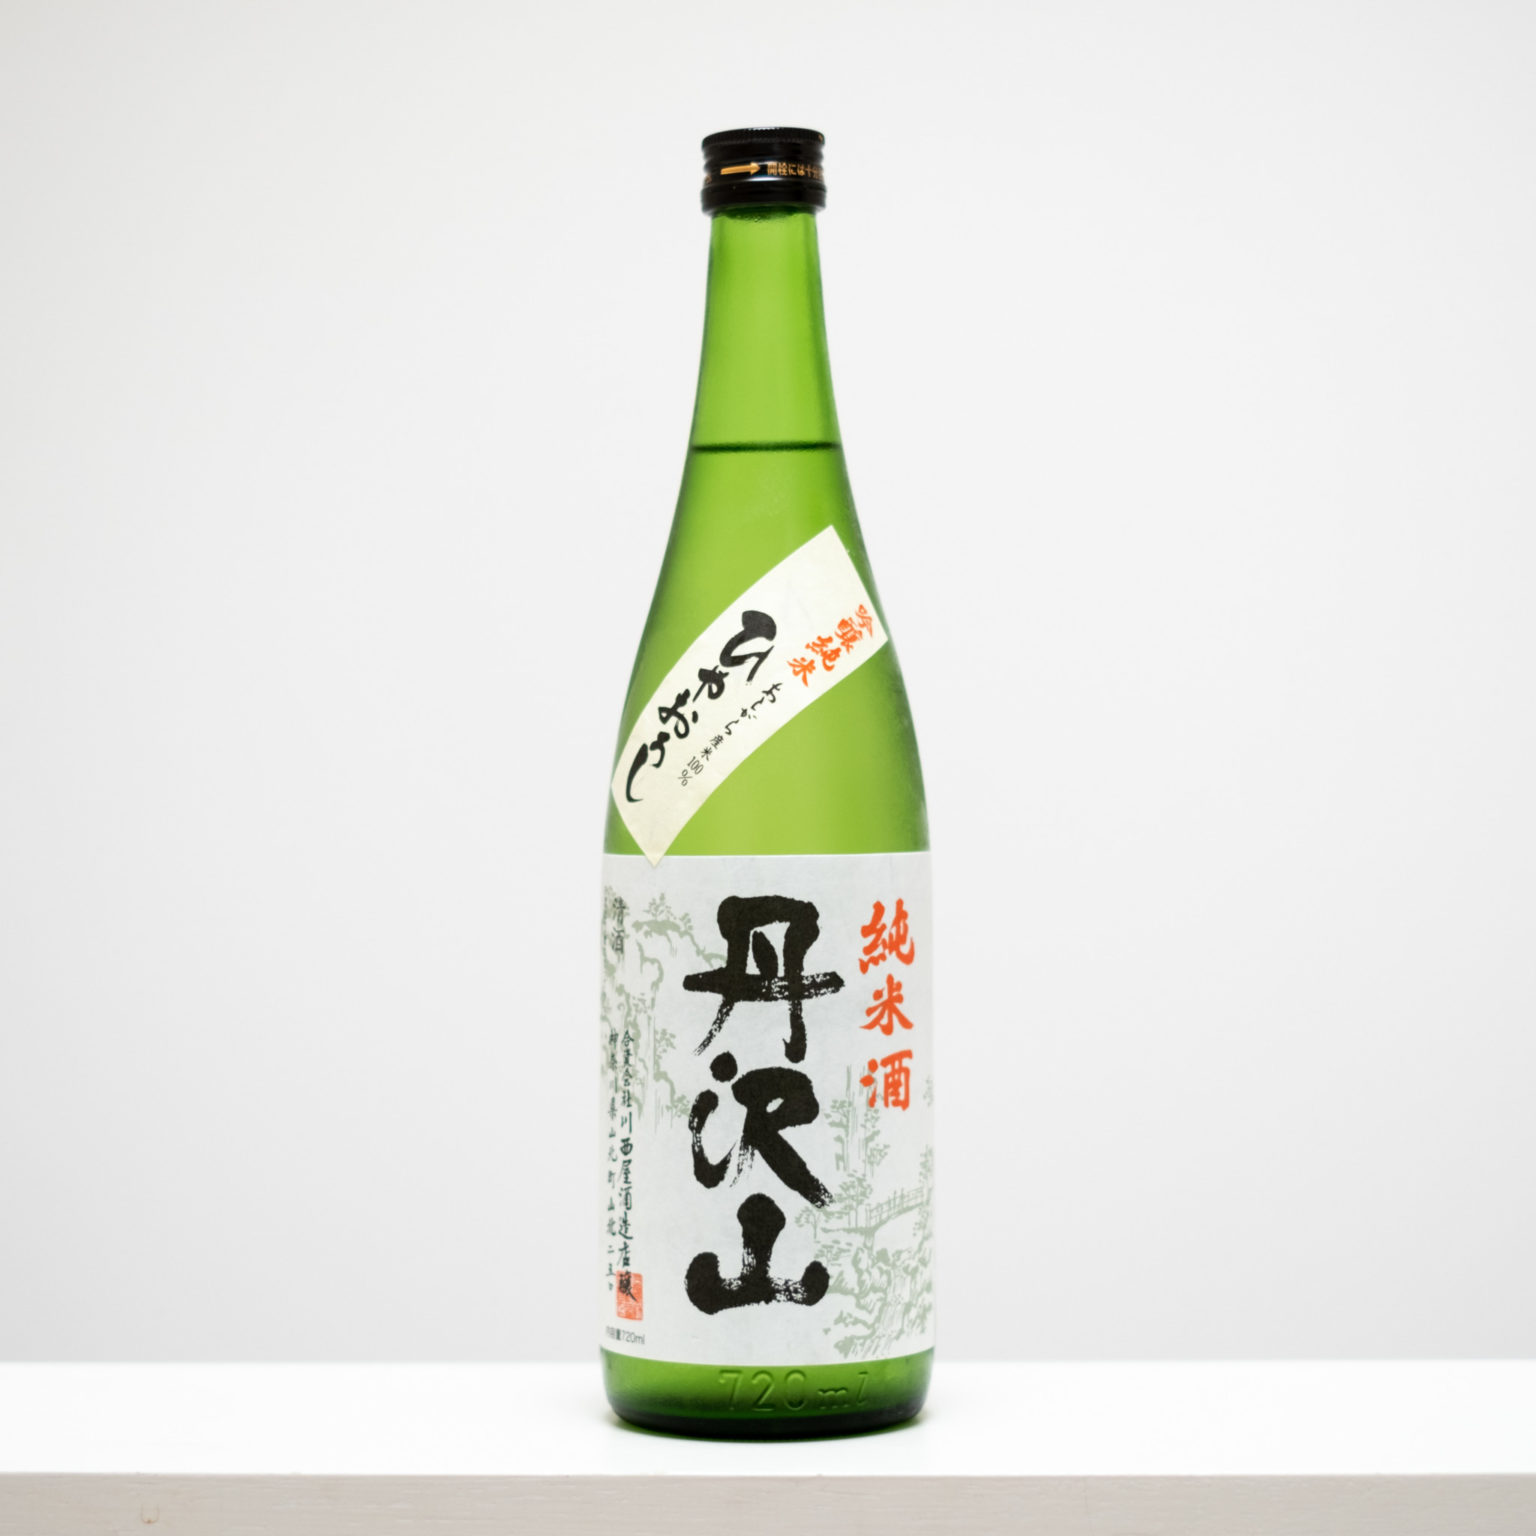 神奈川県足柄郡で川西屋酒造店の代表銘柄「丹沢山」。足柄産の酒造好適米「若水」、丹沢山の恵みの水から生まれた、本当においしいと思える酒。